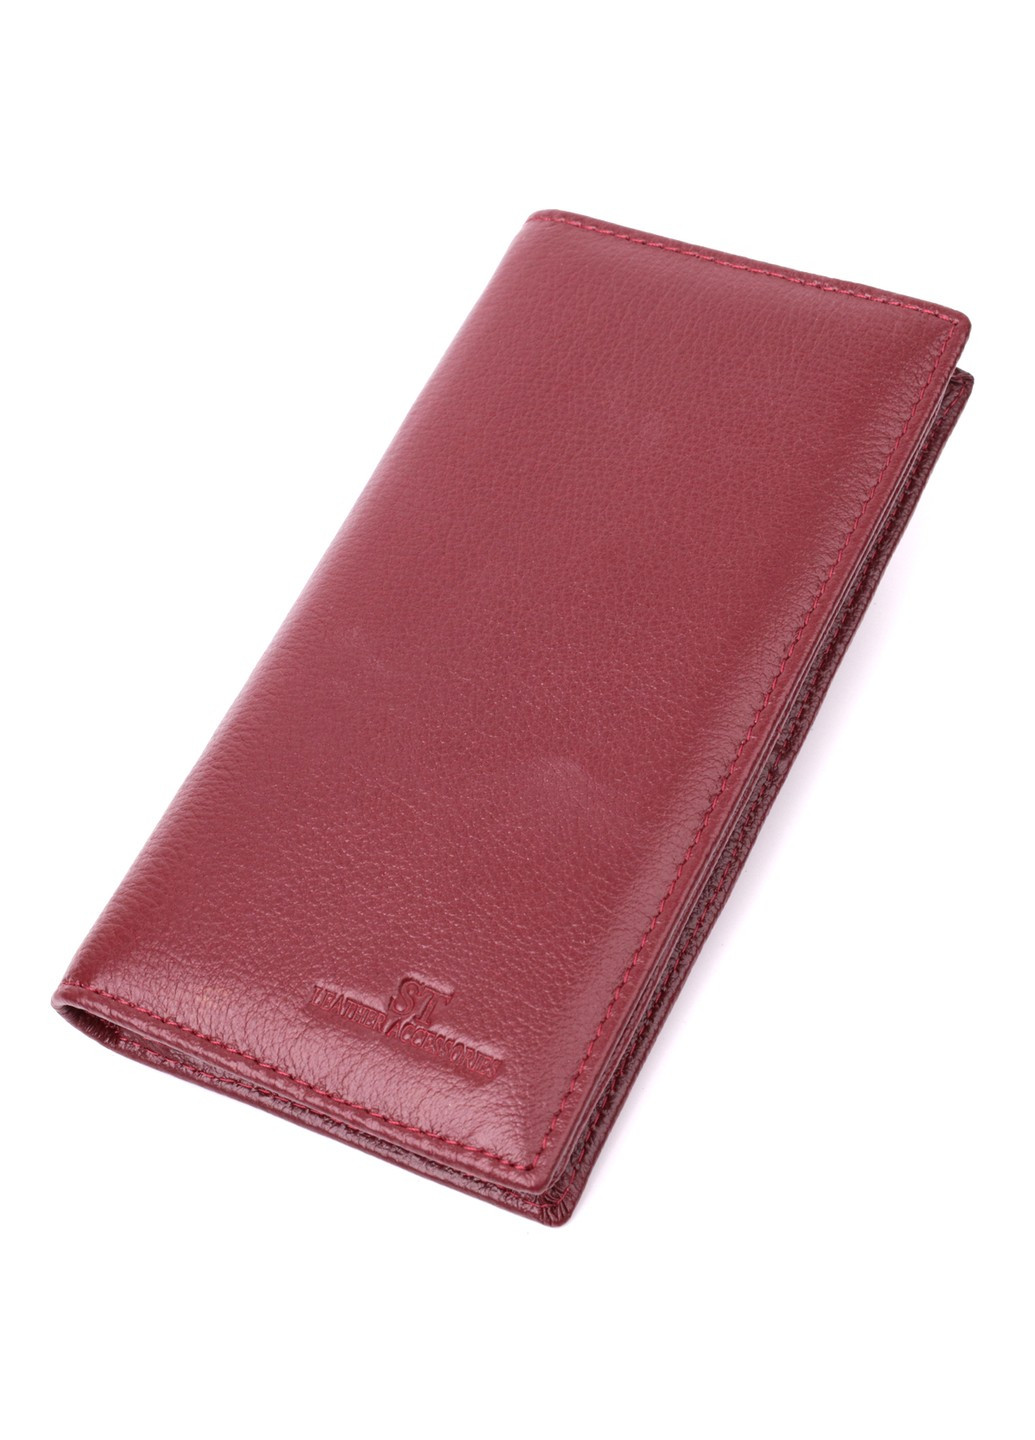 Женский вместительный вертикальный кошелек на магнитах из натуральной кожи 22541 Бордовый st leather (277980530)